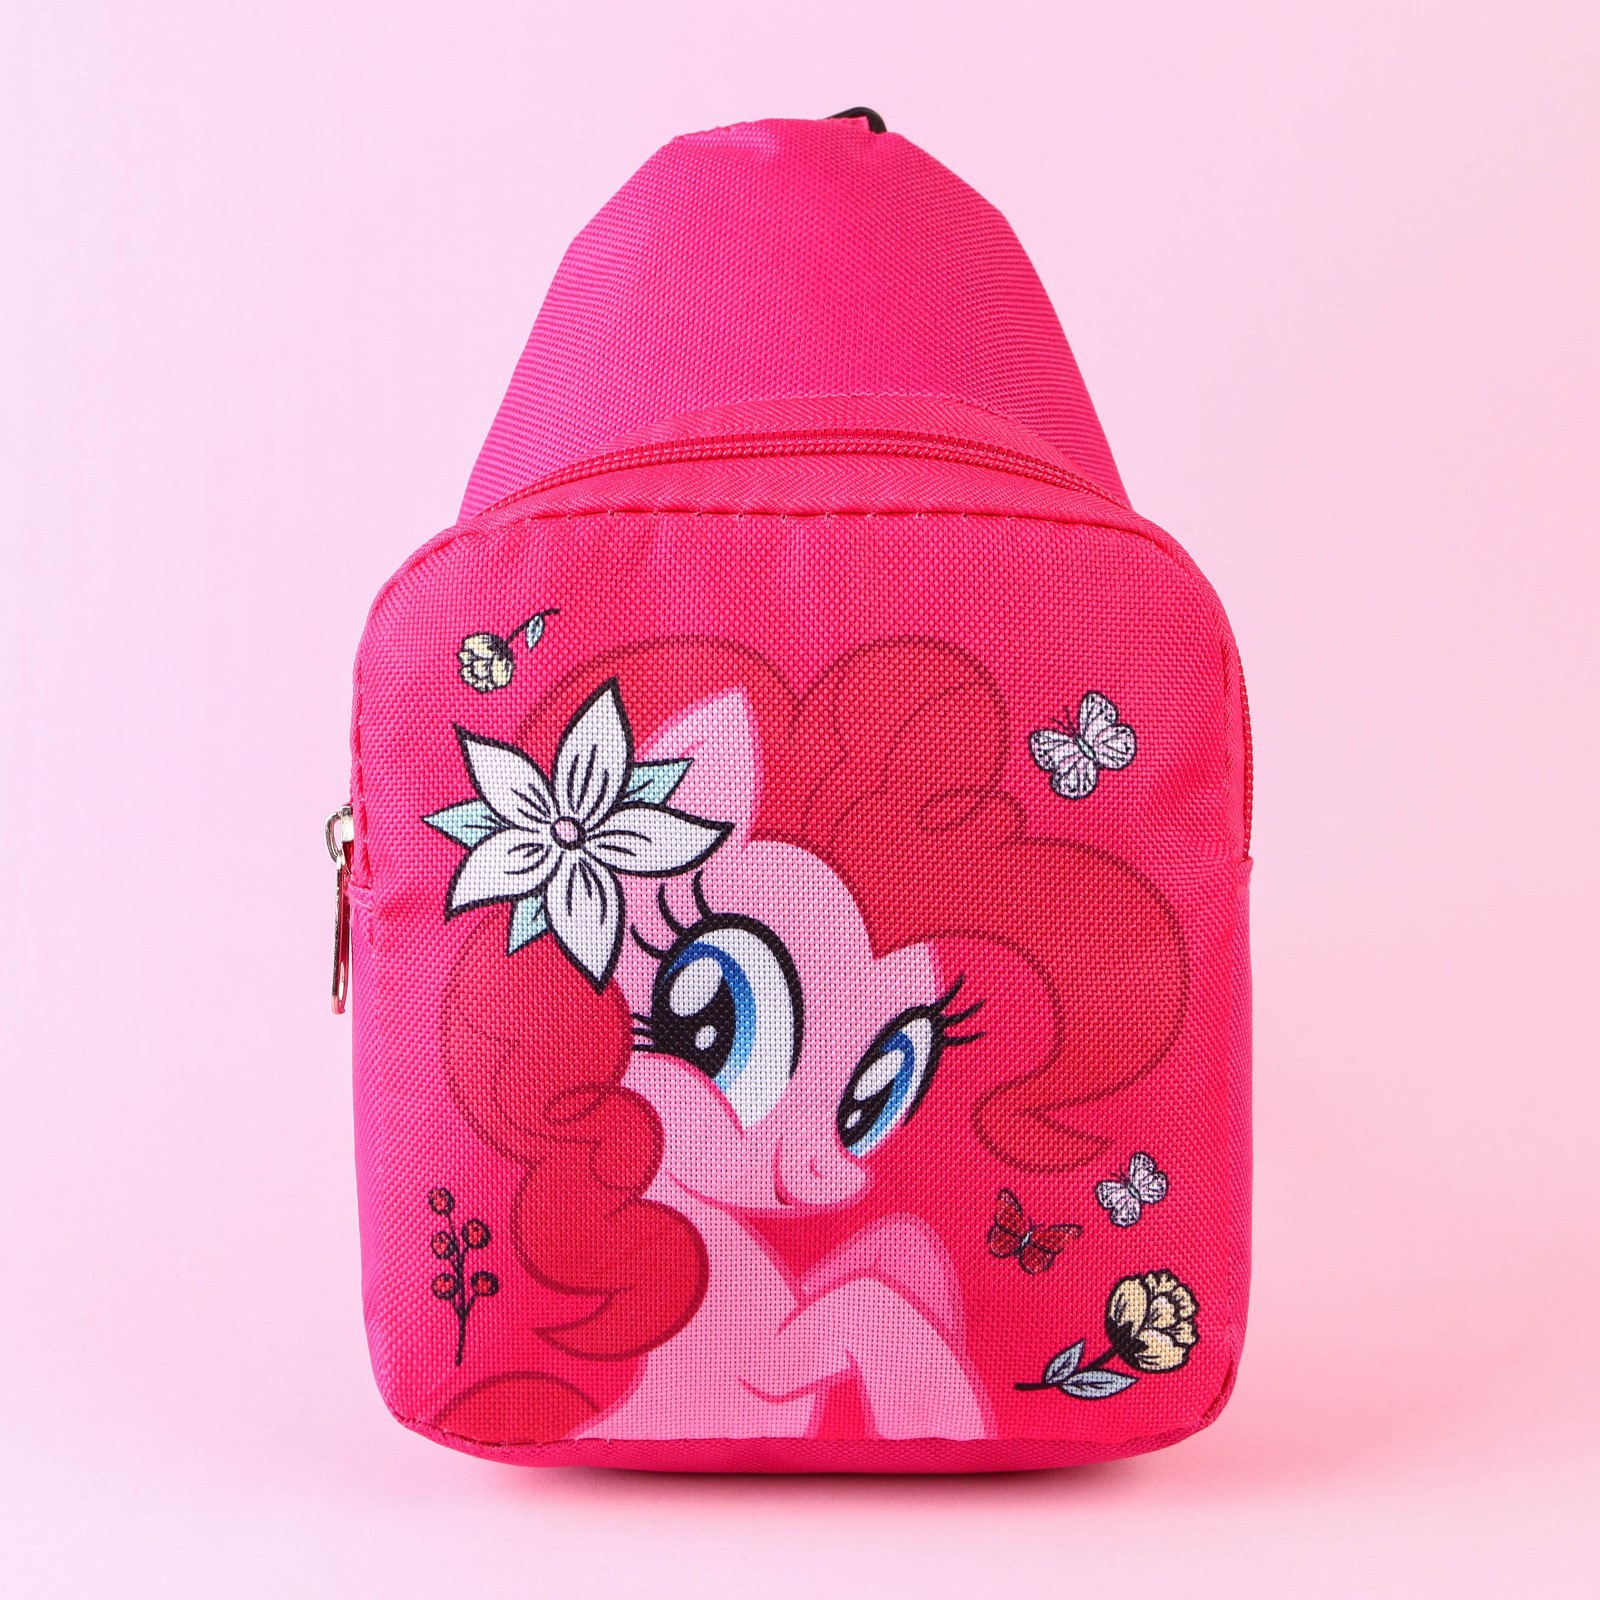 Сумка Hasbro на плечо My Little Pony - фото 2